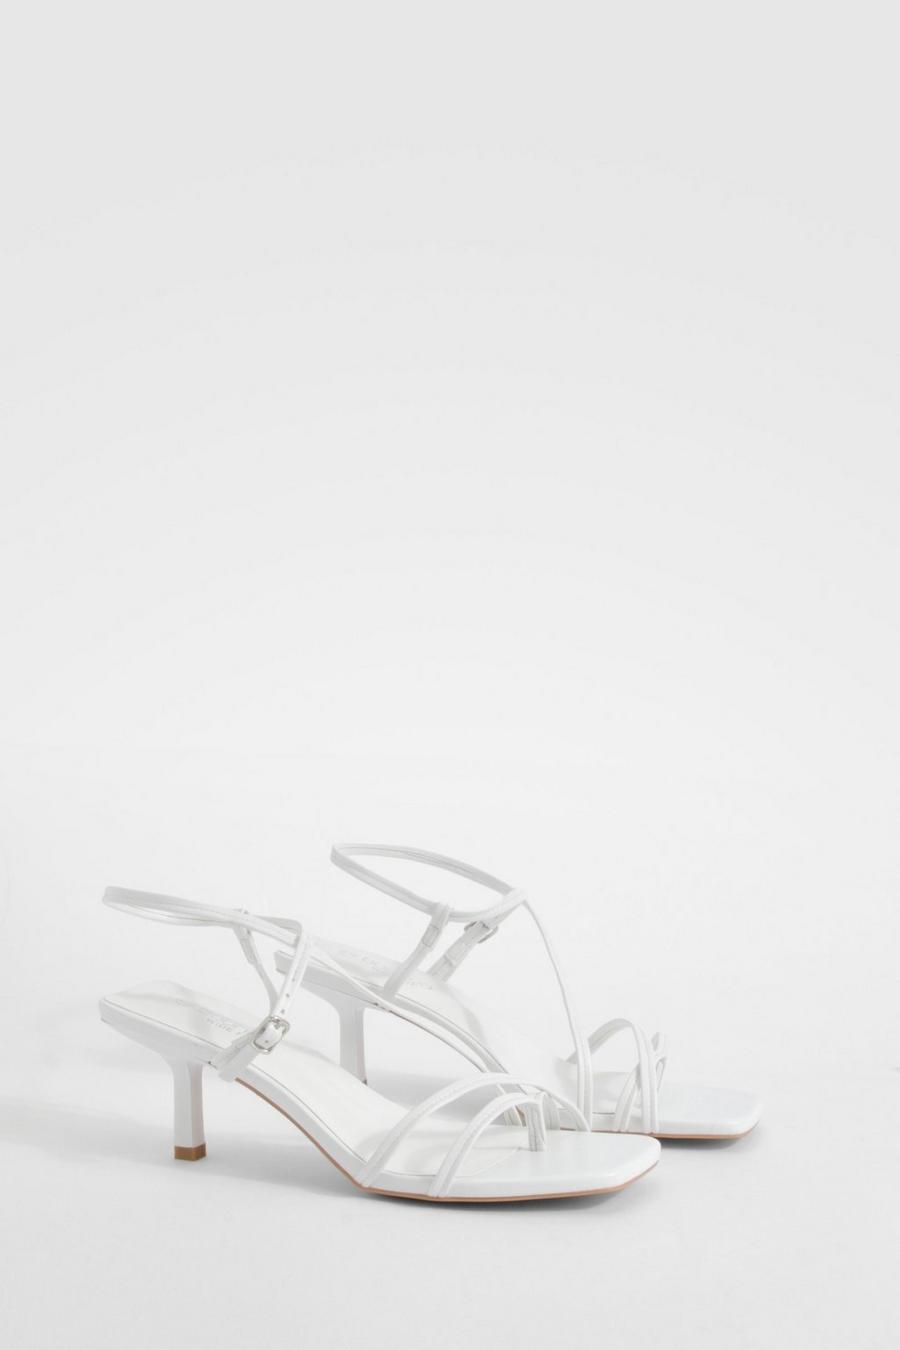 Scarpe a calzata ampia con fascette incrociate e tacco basso, White